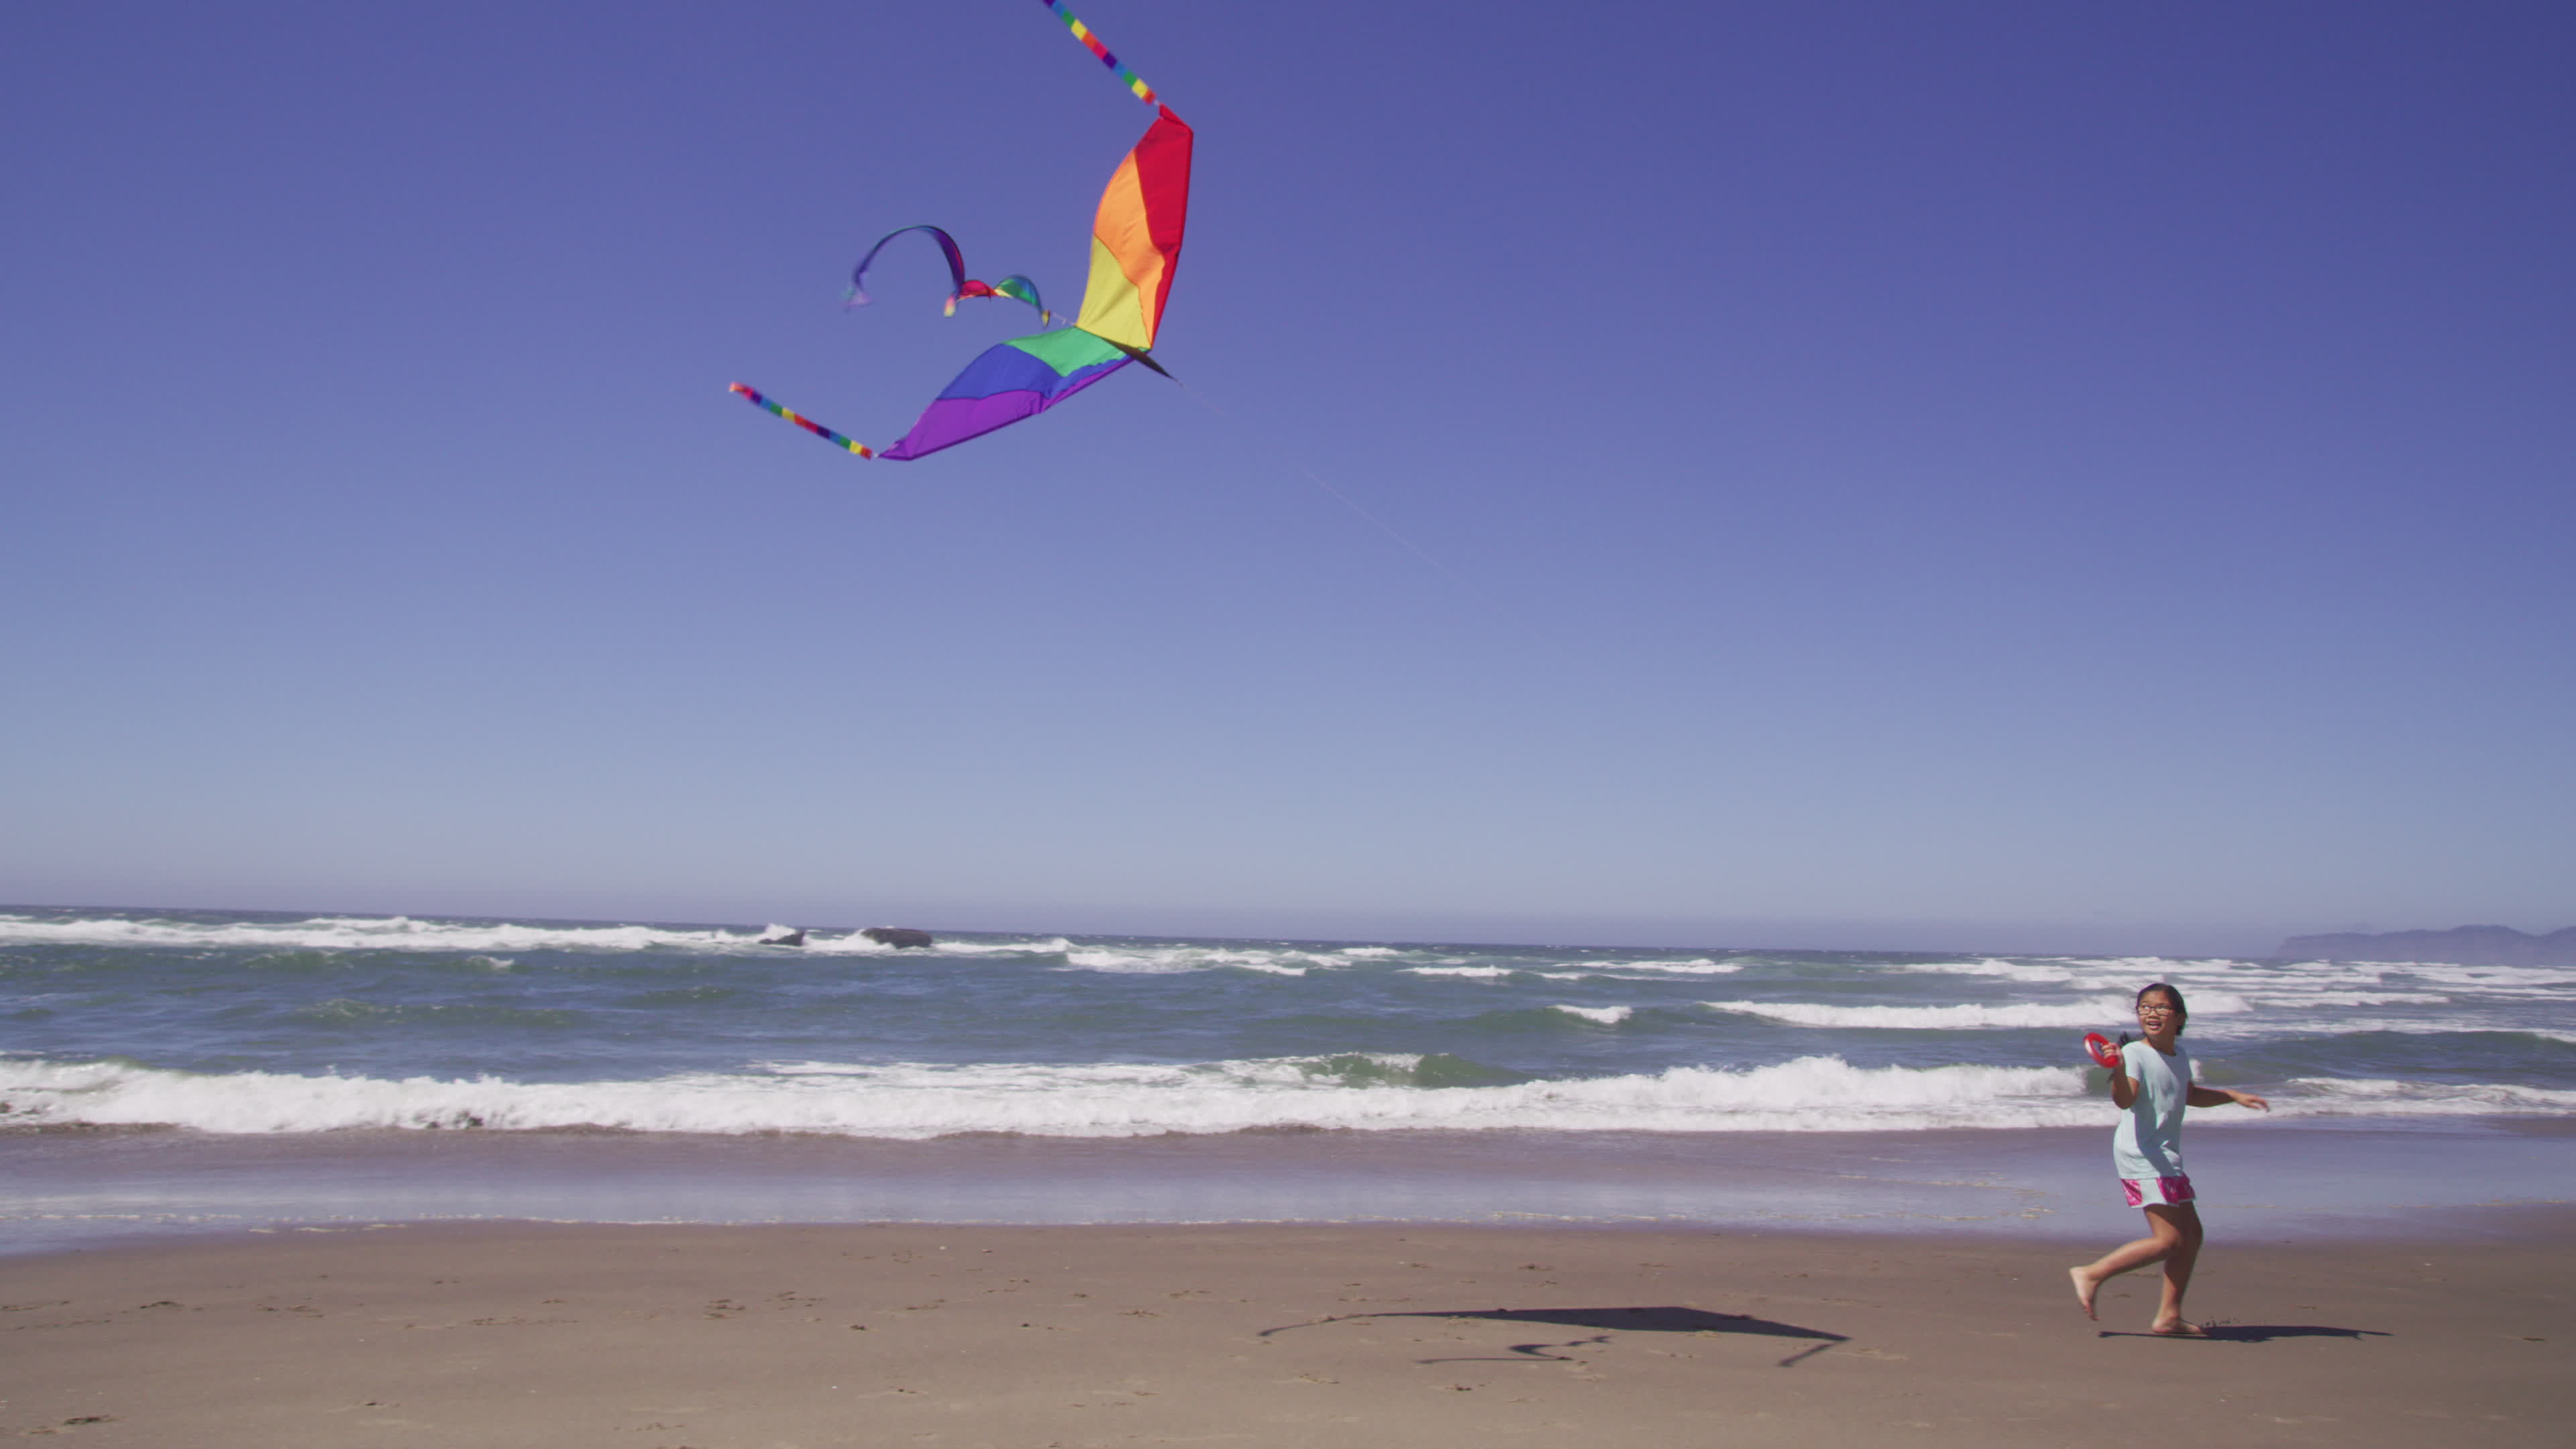 Kite Sports: Outdoor kite flying, Seaside, Ocean, Single line kites for children. 3840x2160 4K Background.